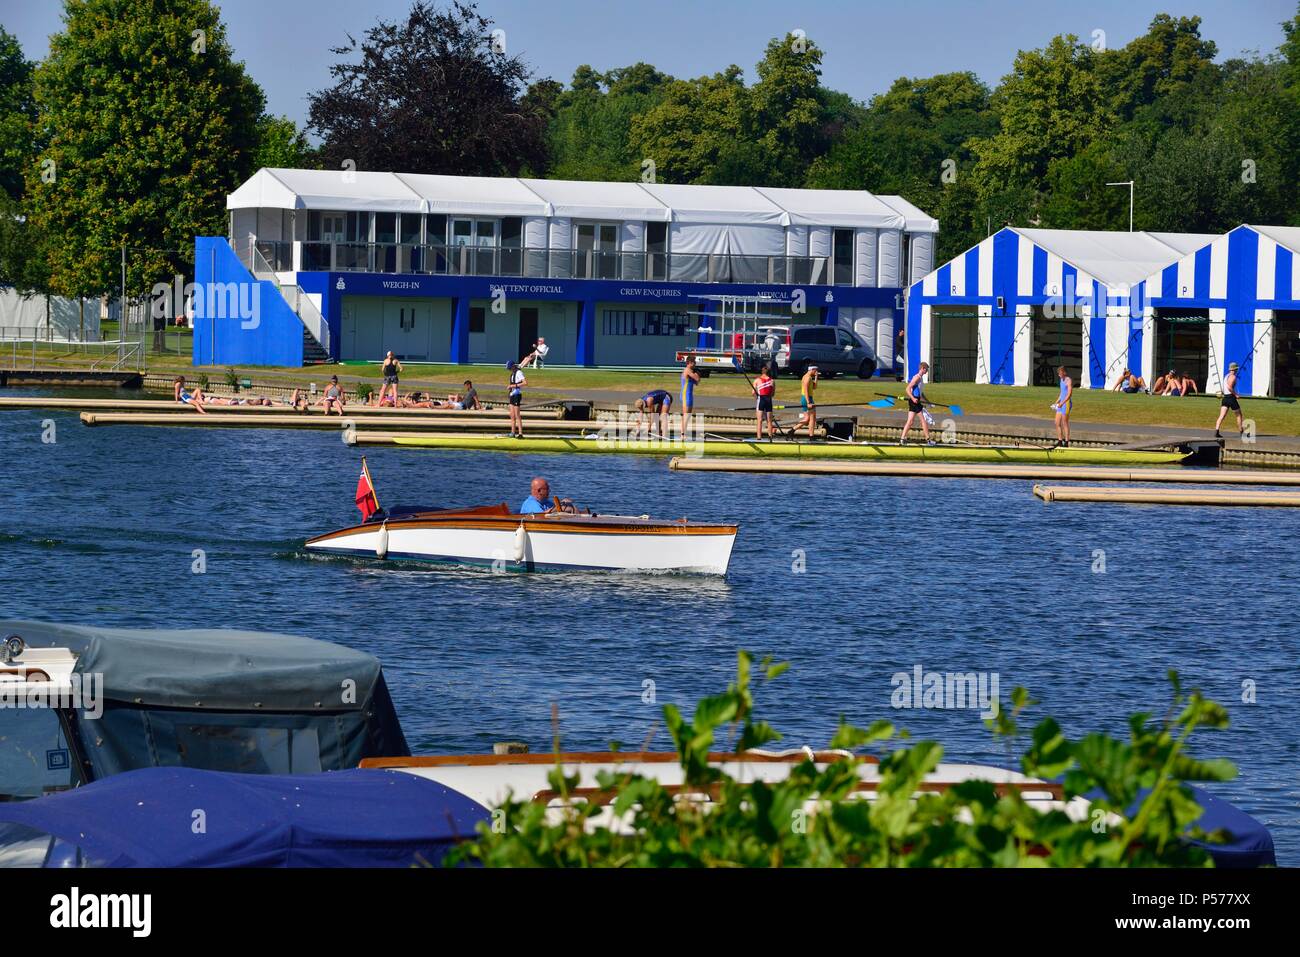 Gli equipaggi della pratica per il prossimo Henley Royal Regatta a cominciare dal 4 - 8 luglio per il terzo più importante evento in inglese sociale calendario sportivo. Foto Stock